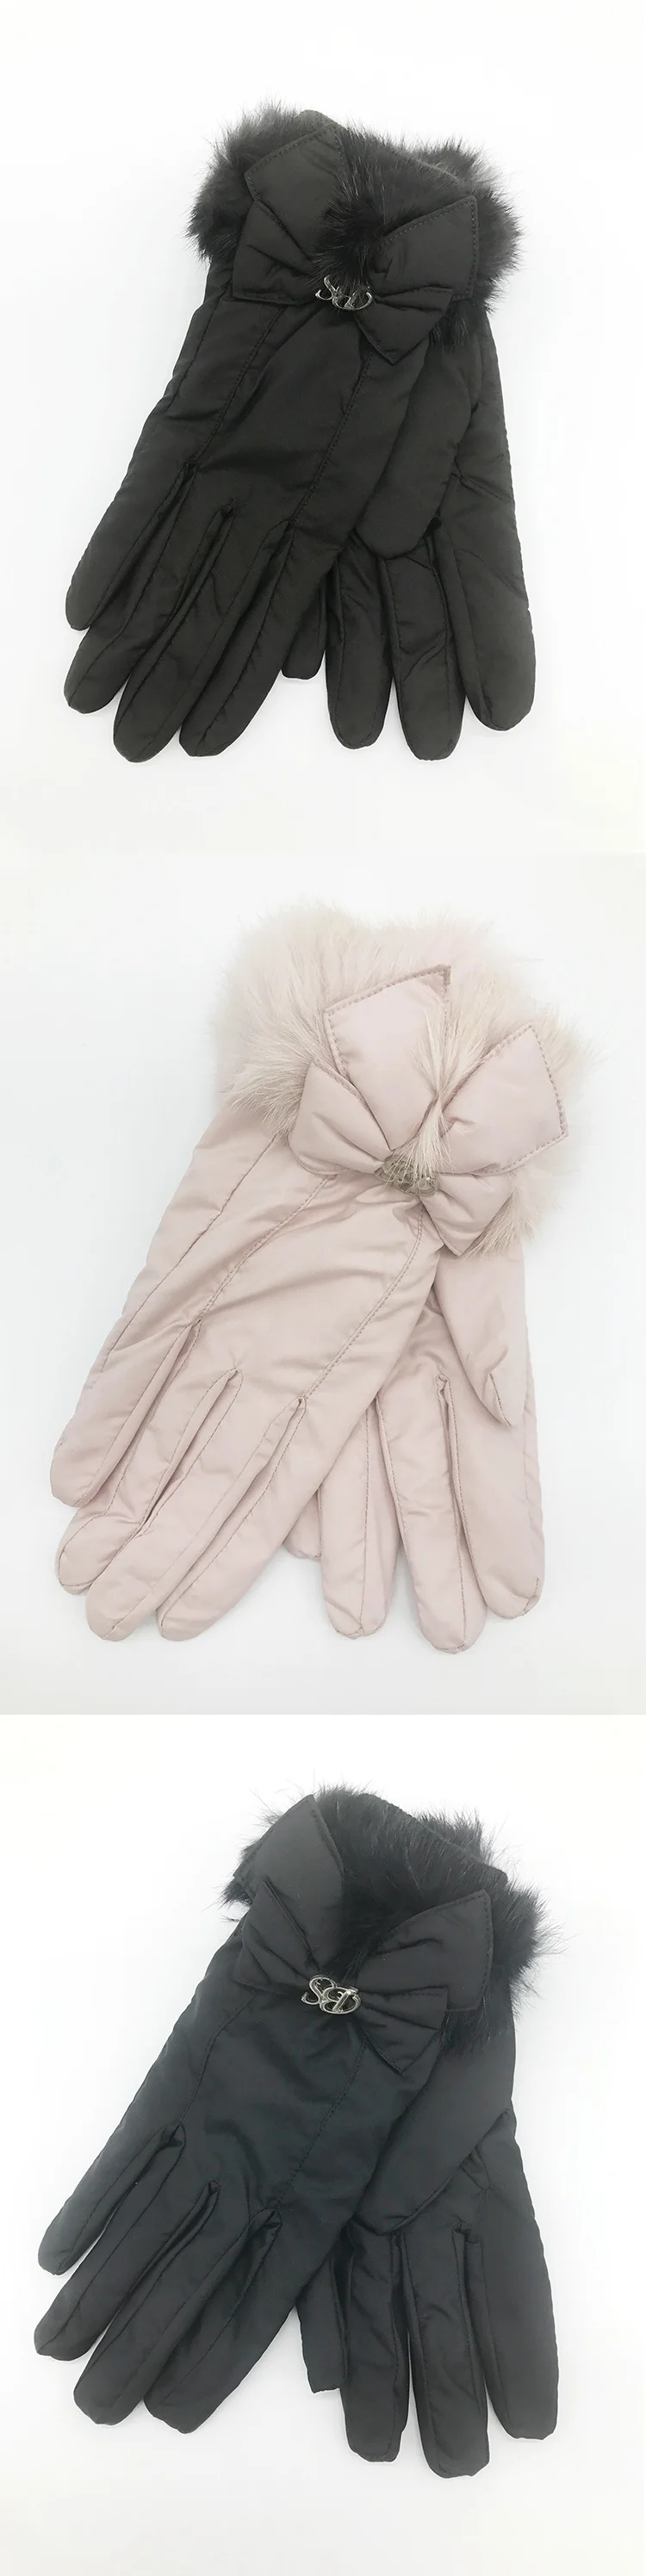 FLYBER полный палец Для женщин перчатки кролика волосы однотонный галстук-бабочка дизайн Зимние Теплые Мягкие Рукавицы 2018 модные гуанты mujer